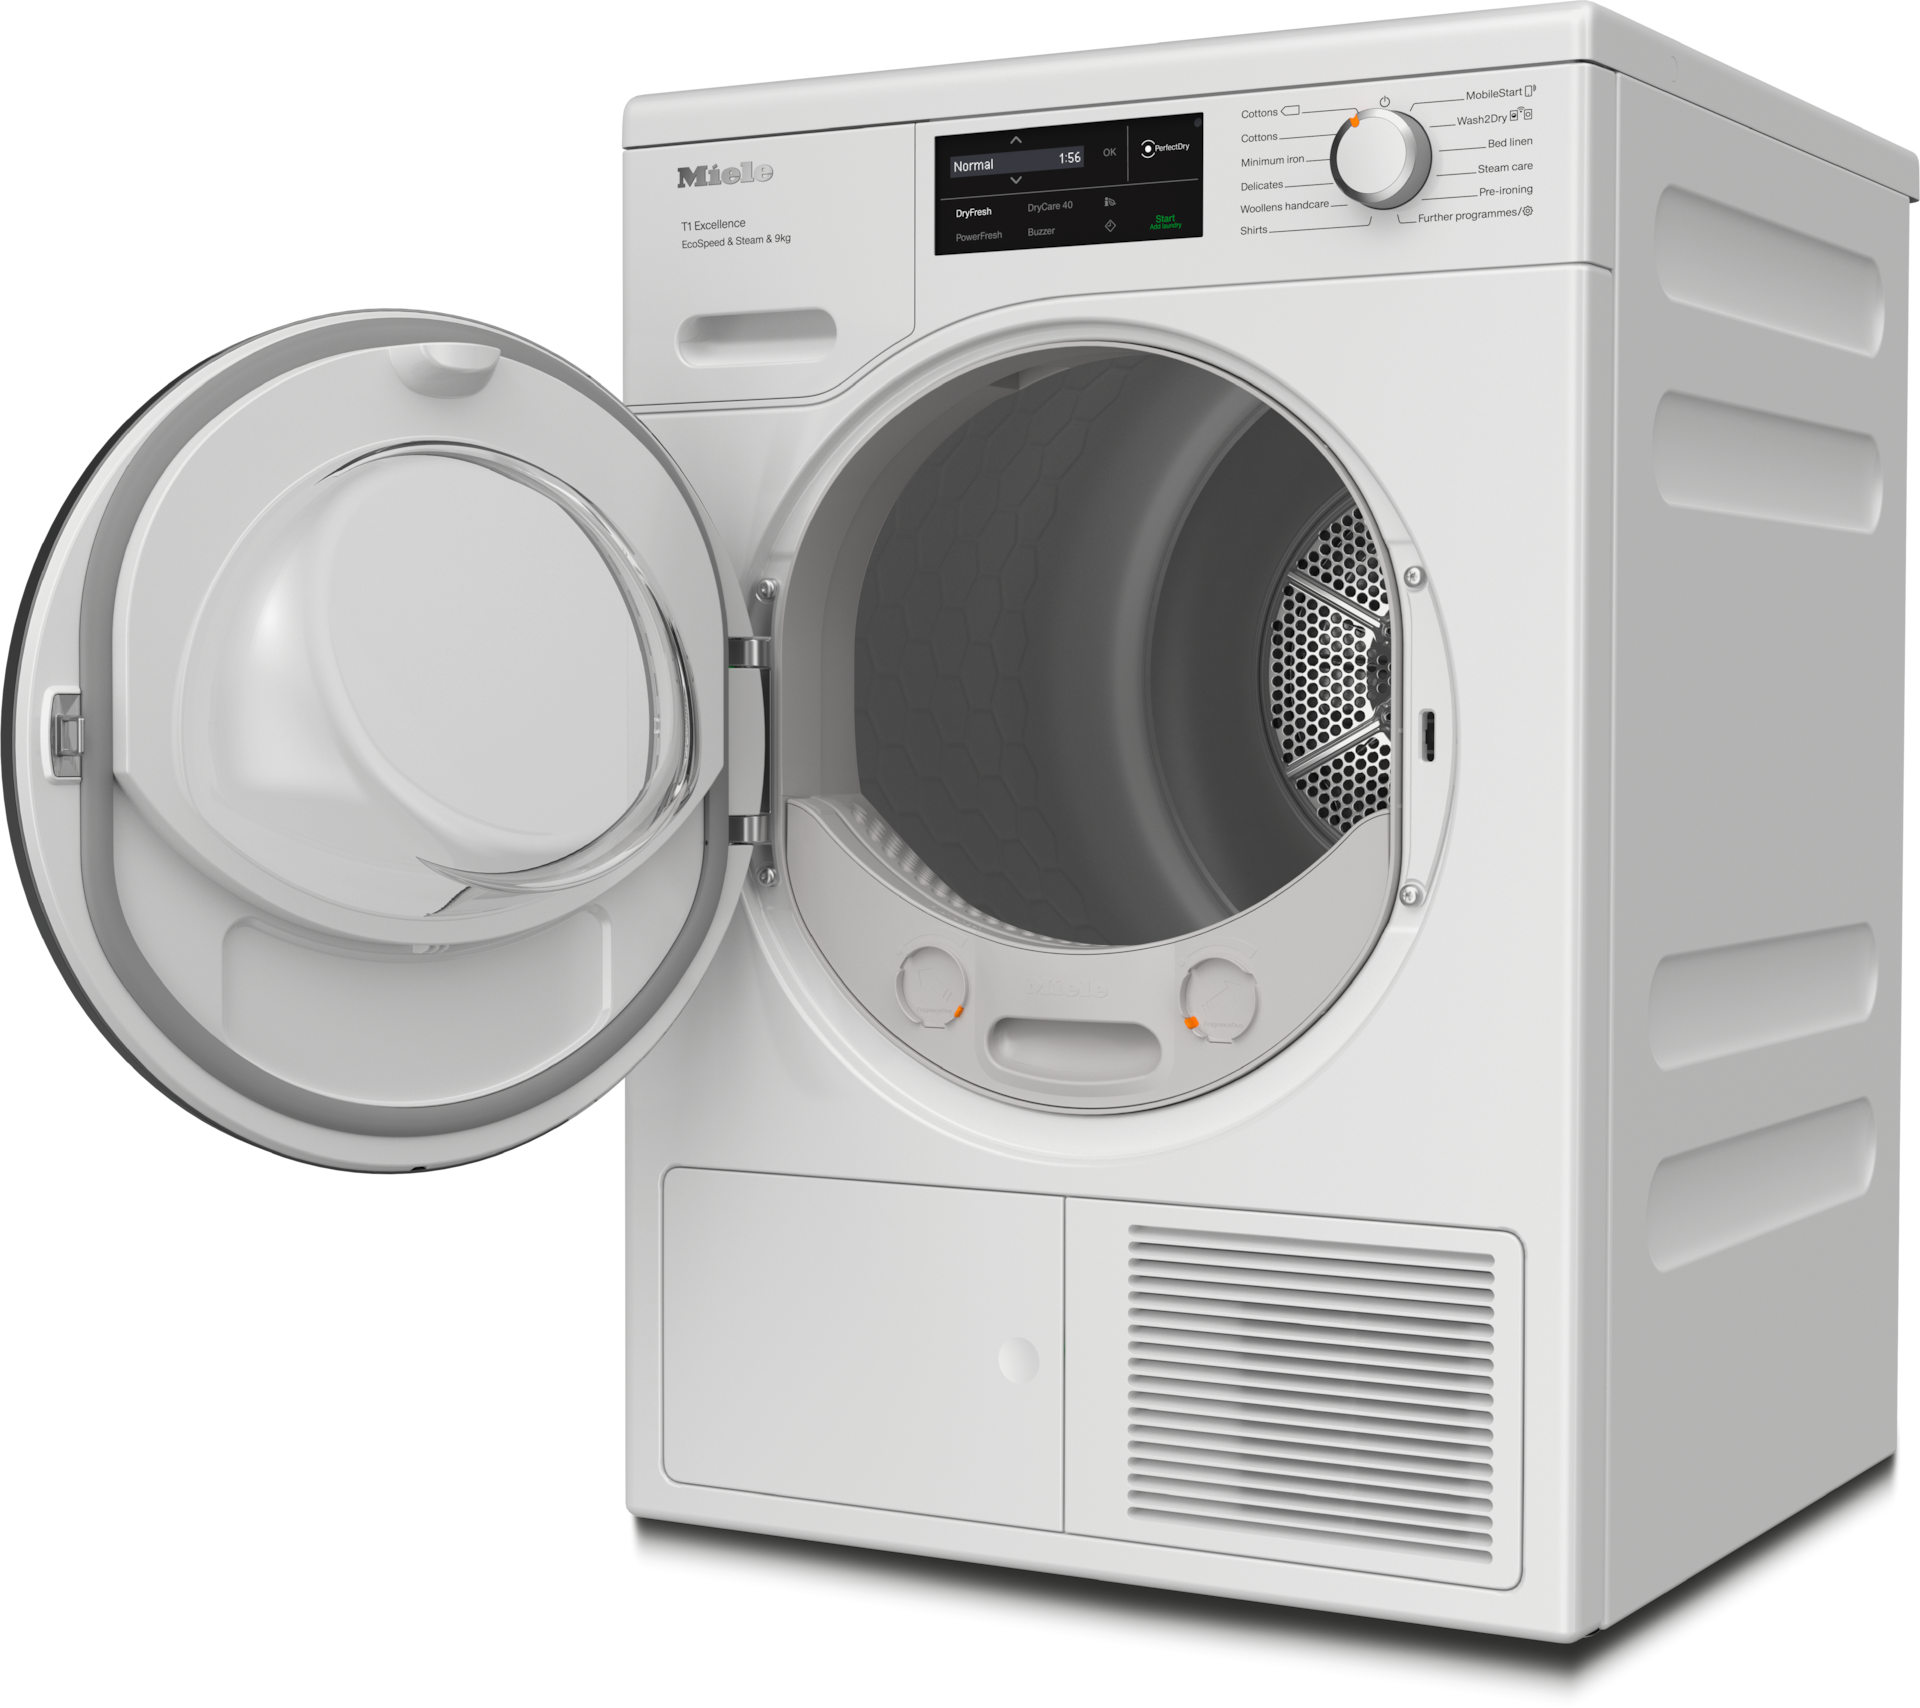 Tumble dryers - TEL785WP EcoSpeed&Steam&9kg Lotus white - 2